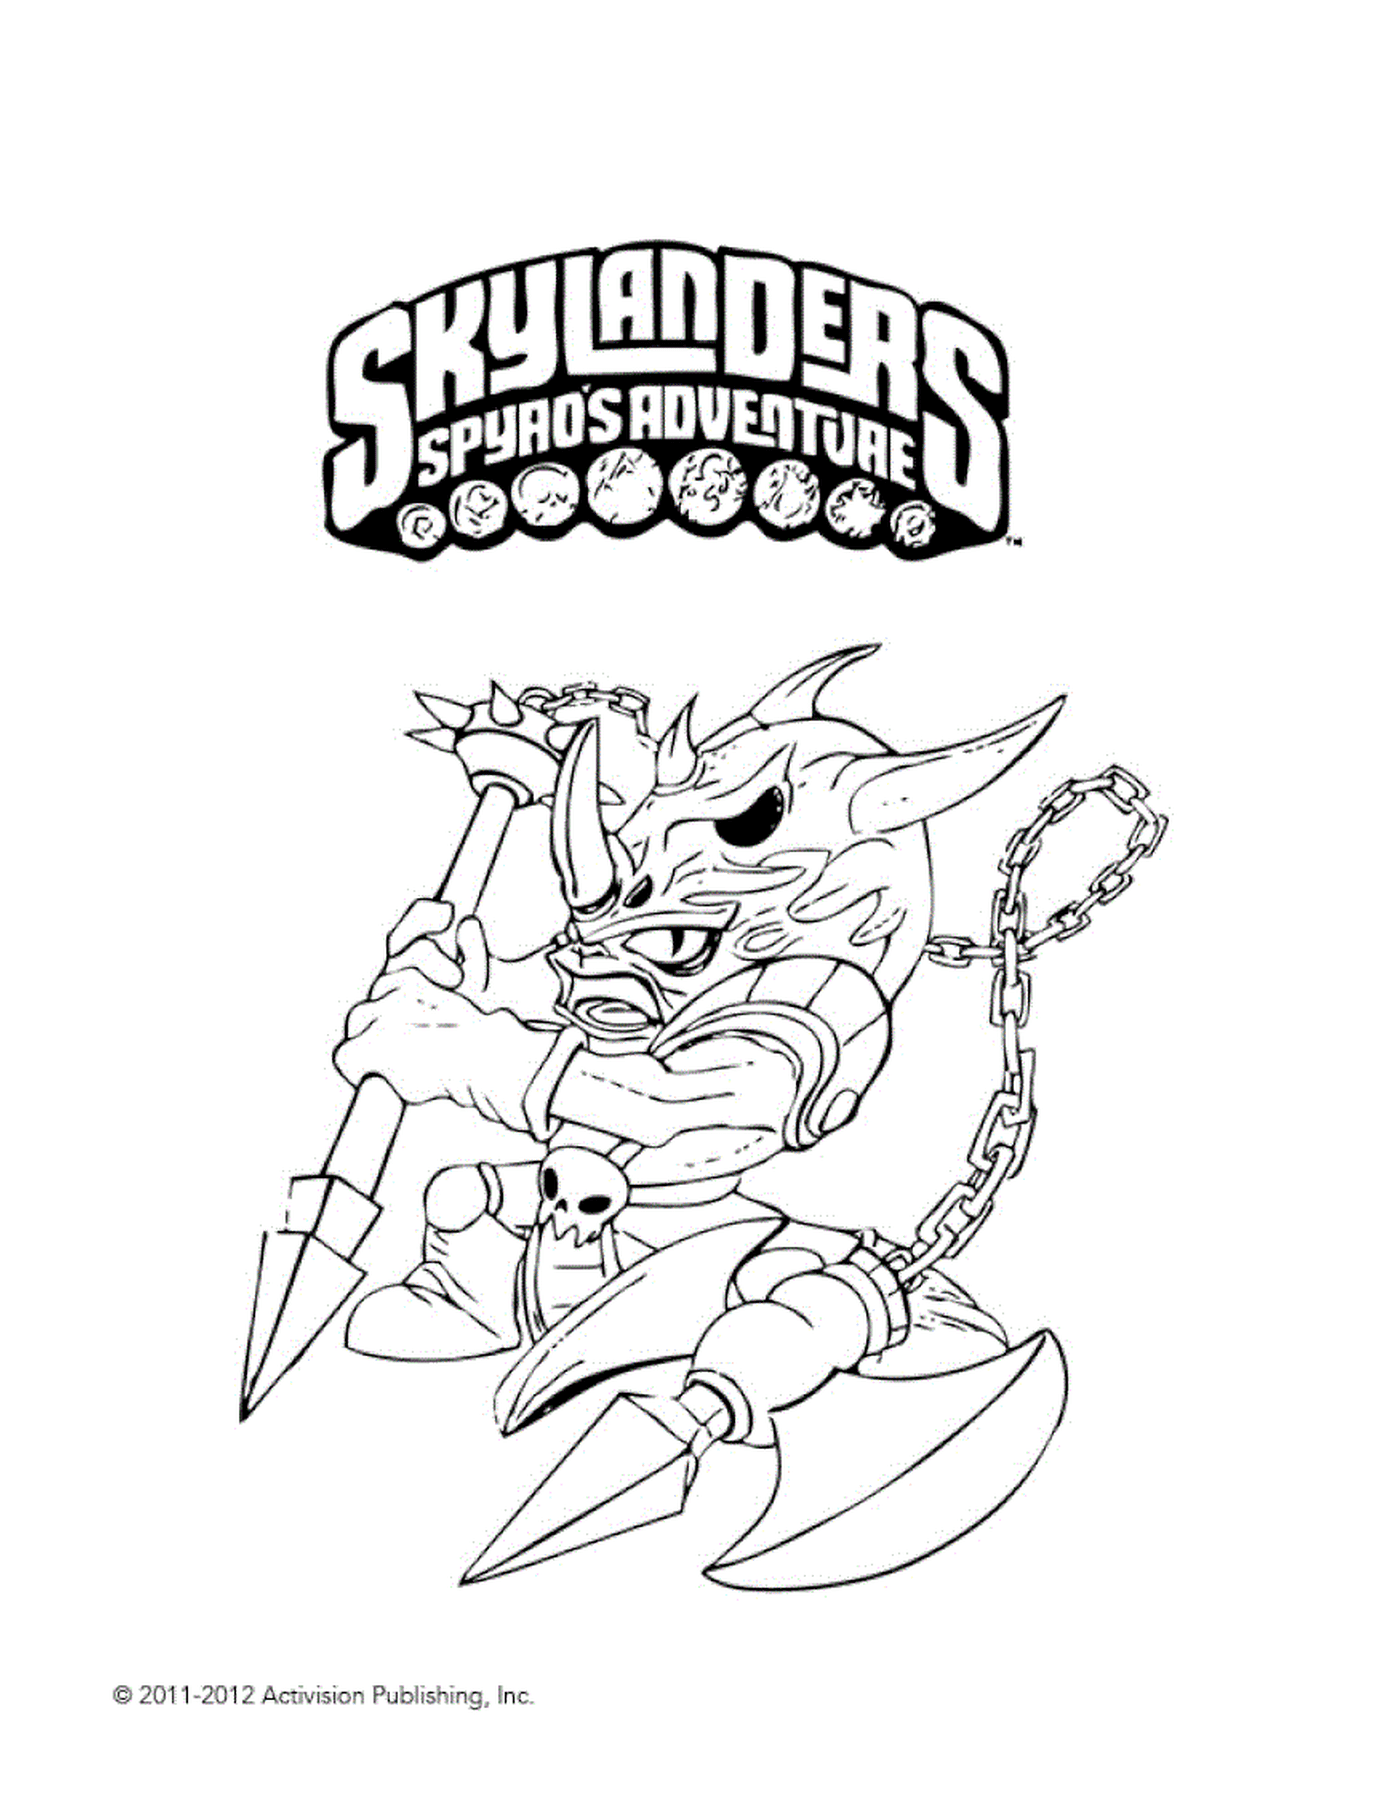  Skylanders Voodood malicious 